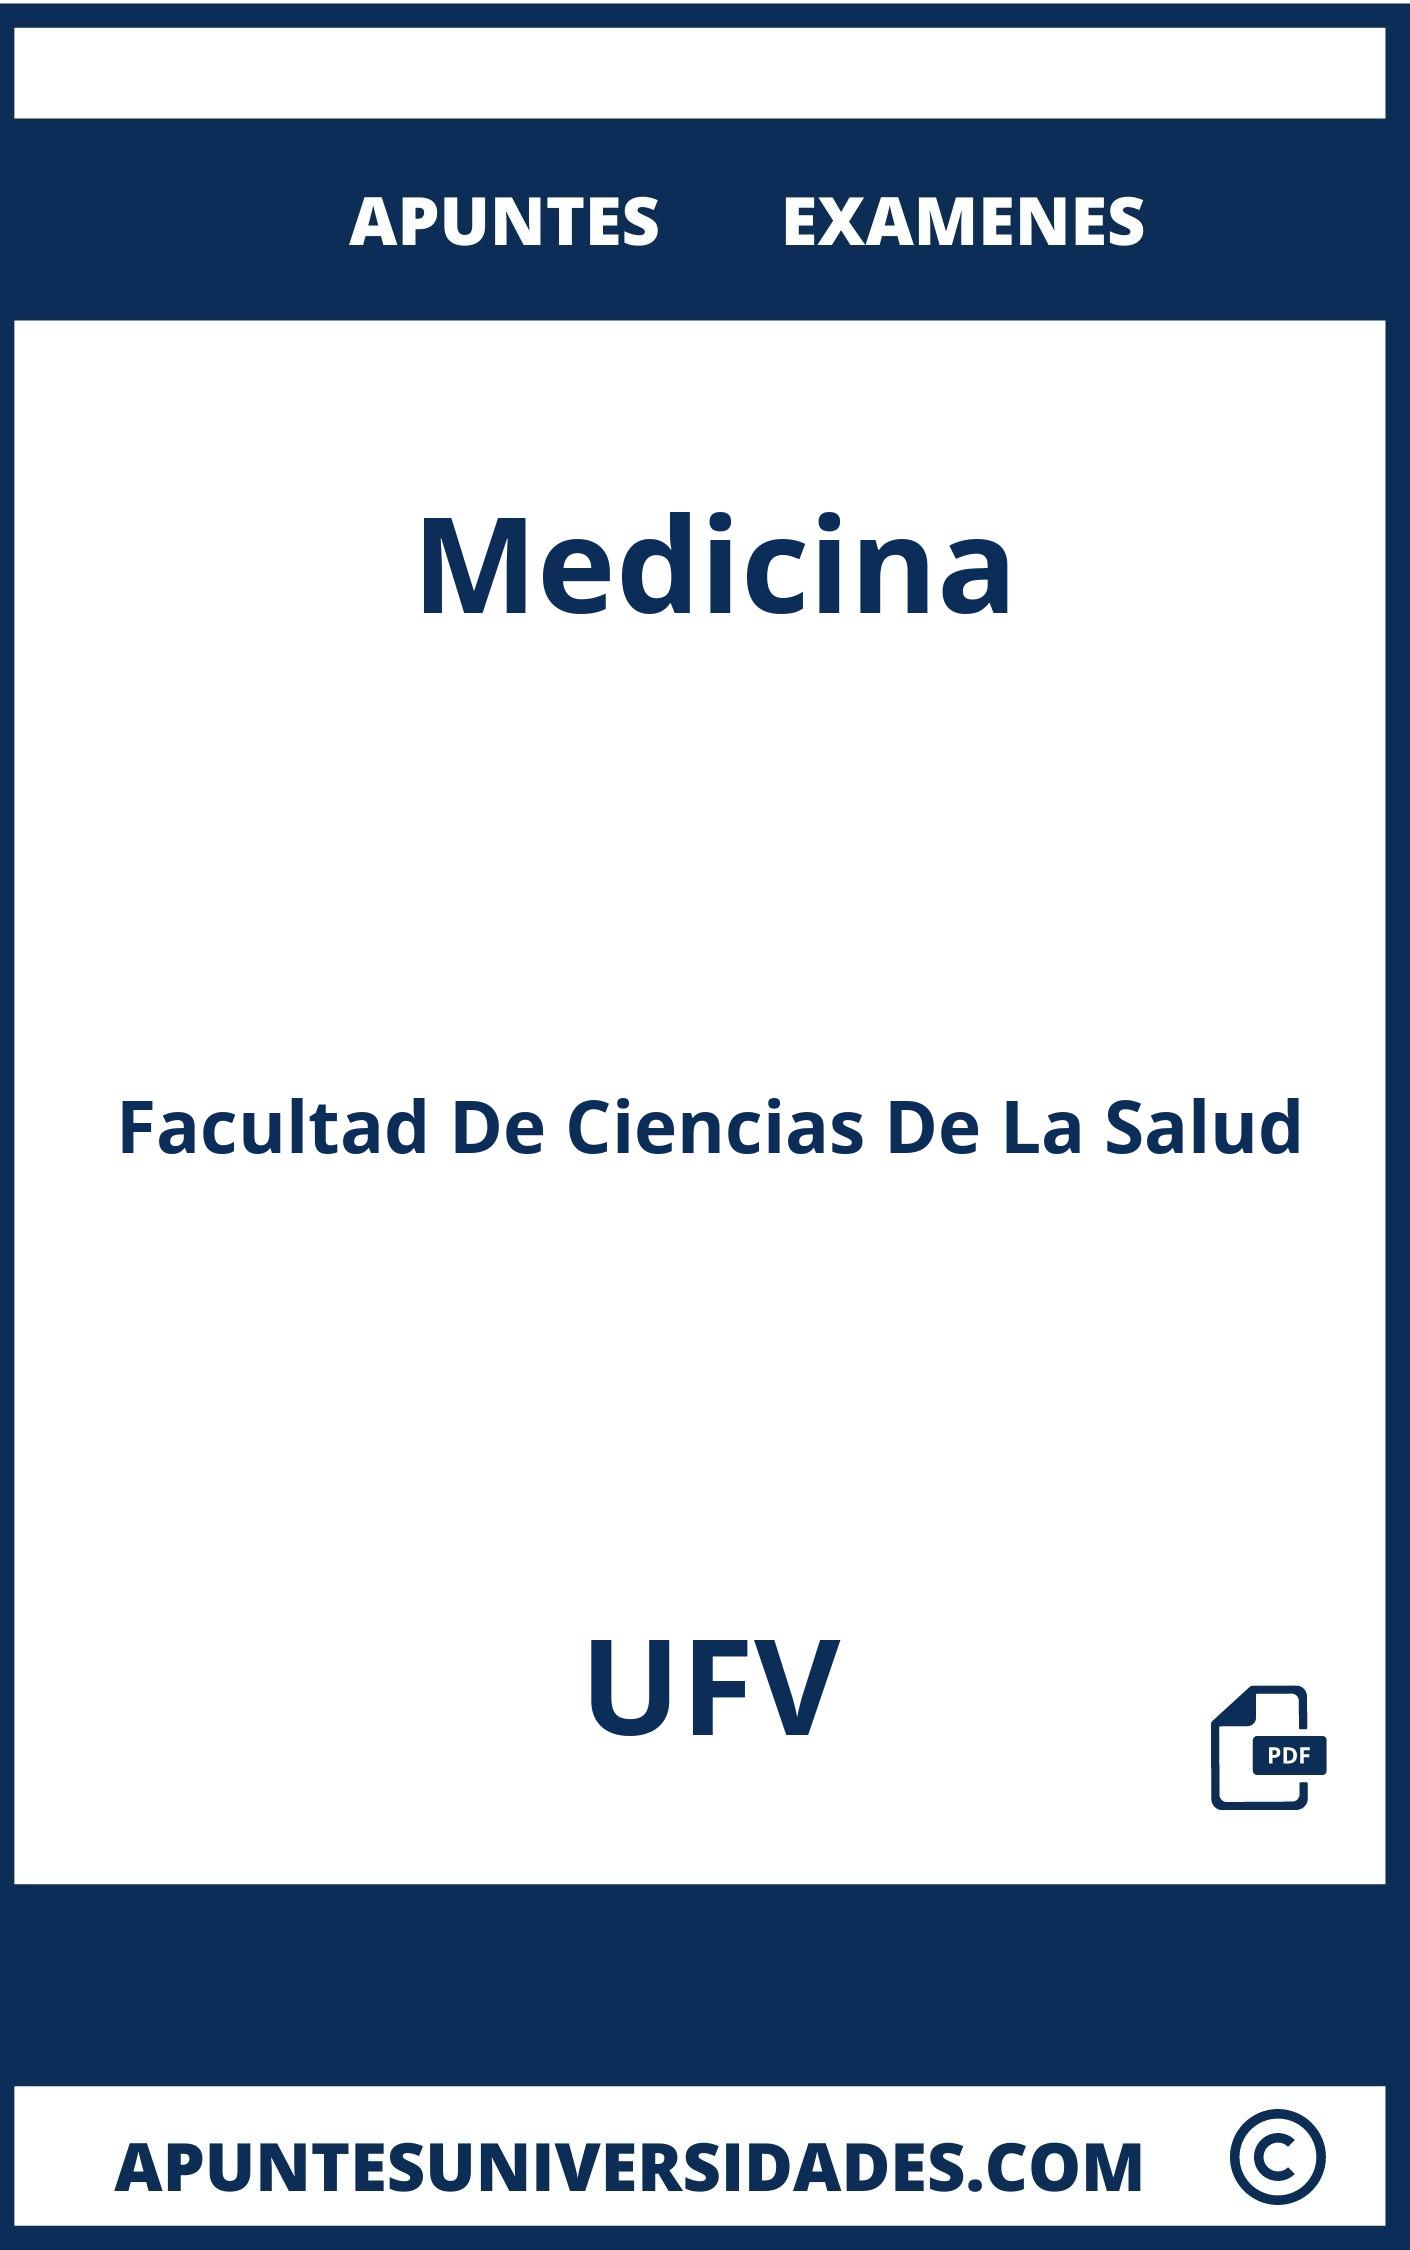 Apuntes y Examenes Medicina UFV